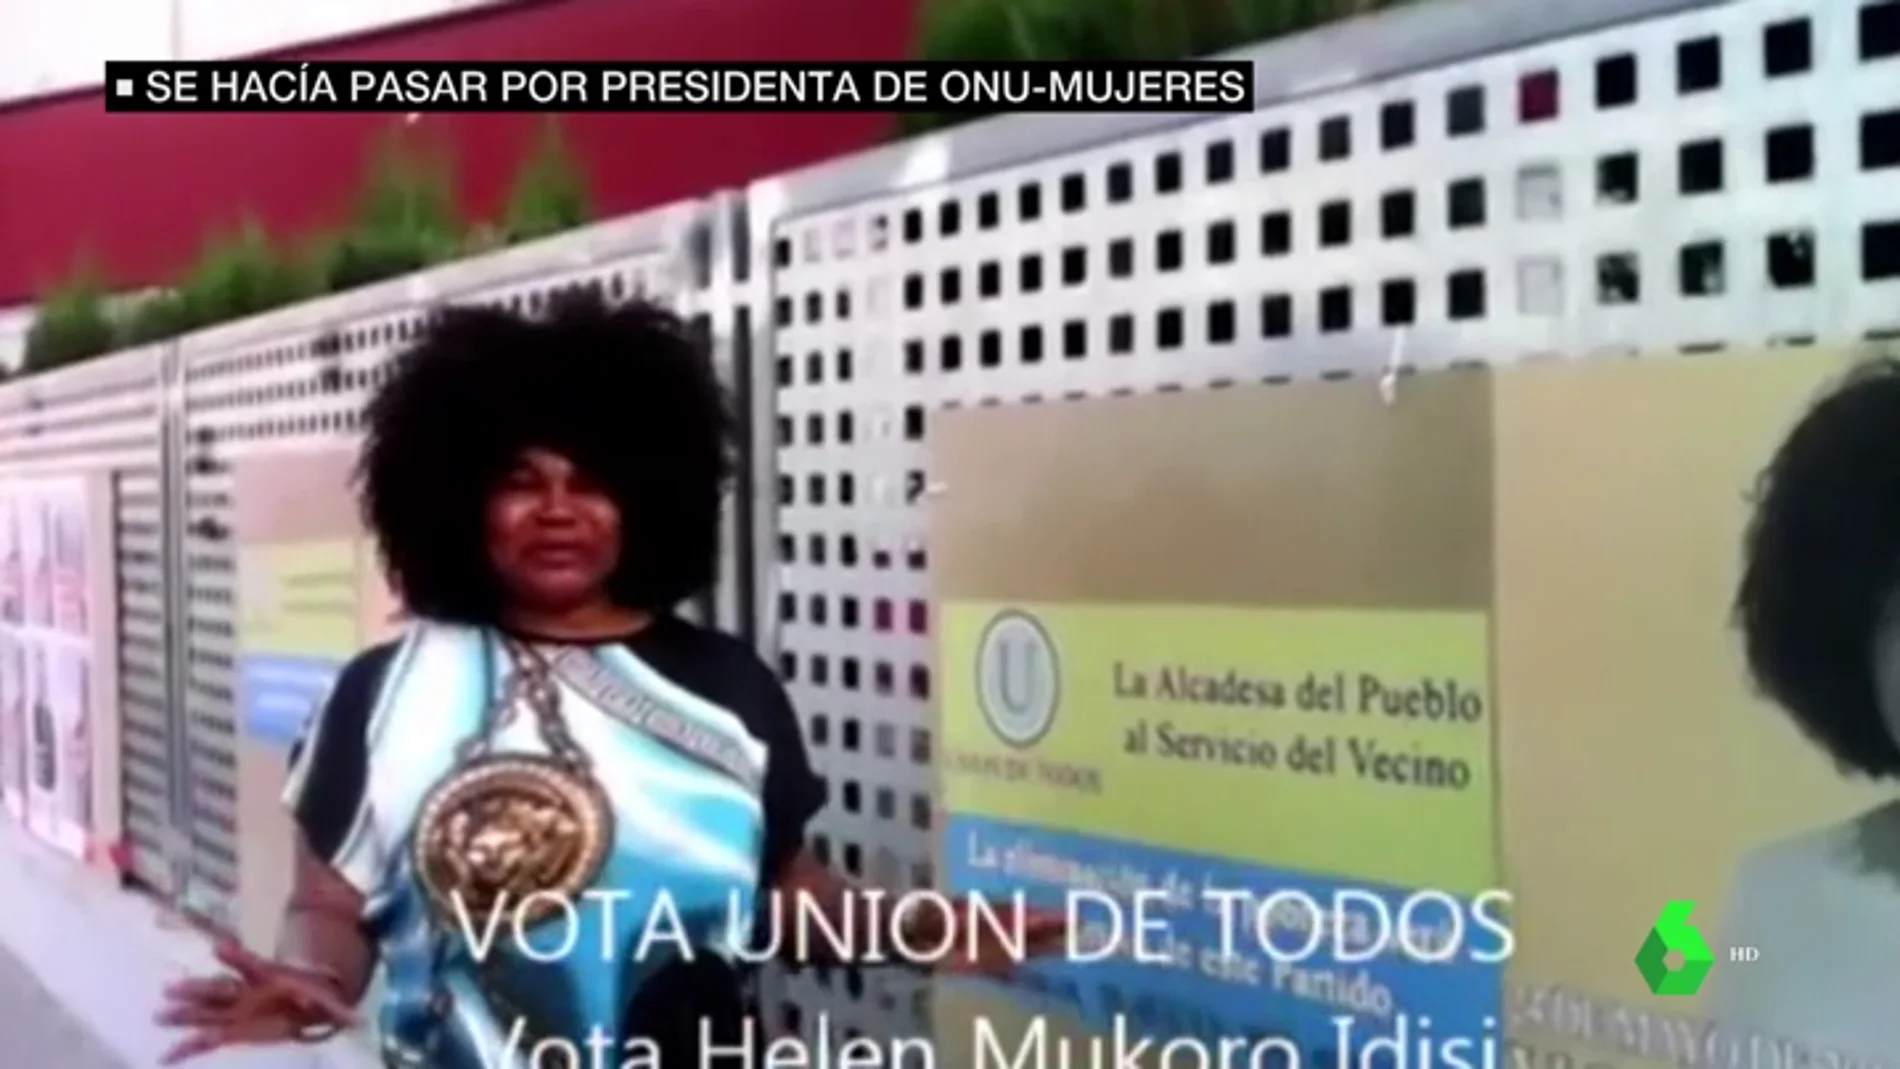 Helen Mukoro, la mujer que se hizo pasar por la presidenta de ONU-Mujeres en España